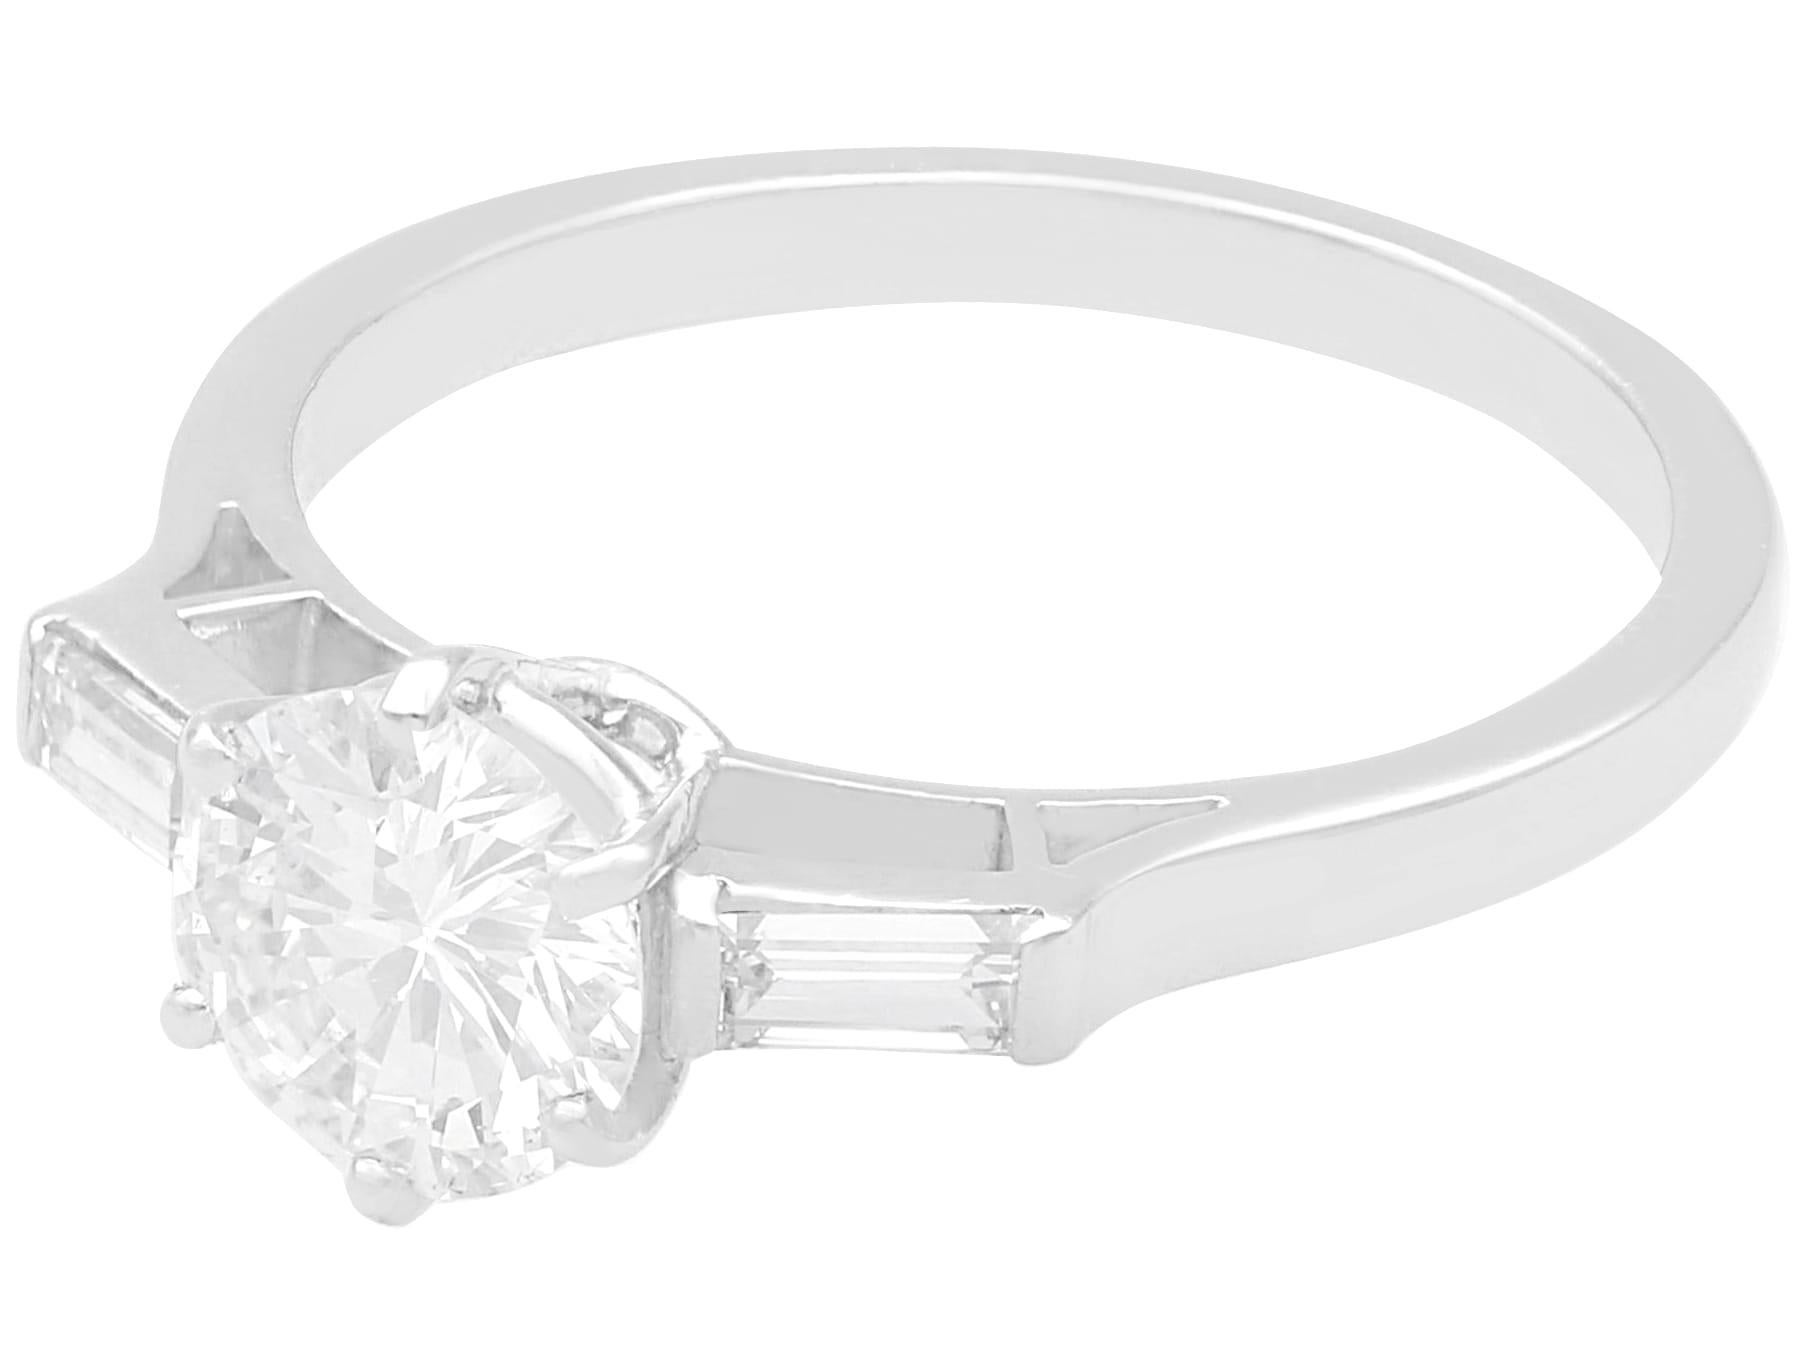 Brilliant Cut Antique 1.24 Carat Diamond and Platinum Solitaire Ring For Sale